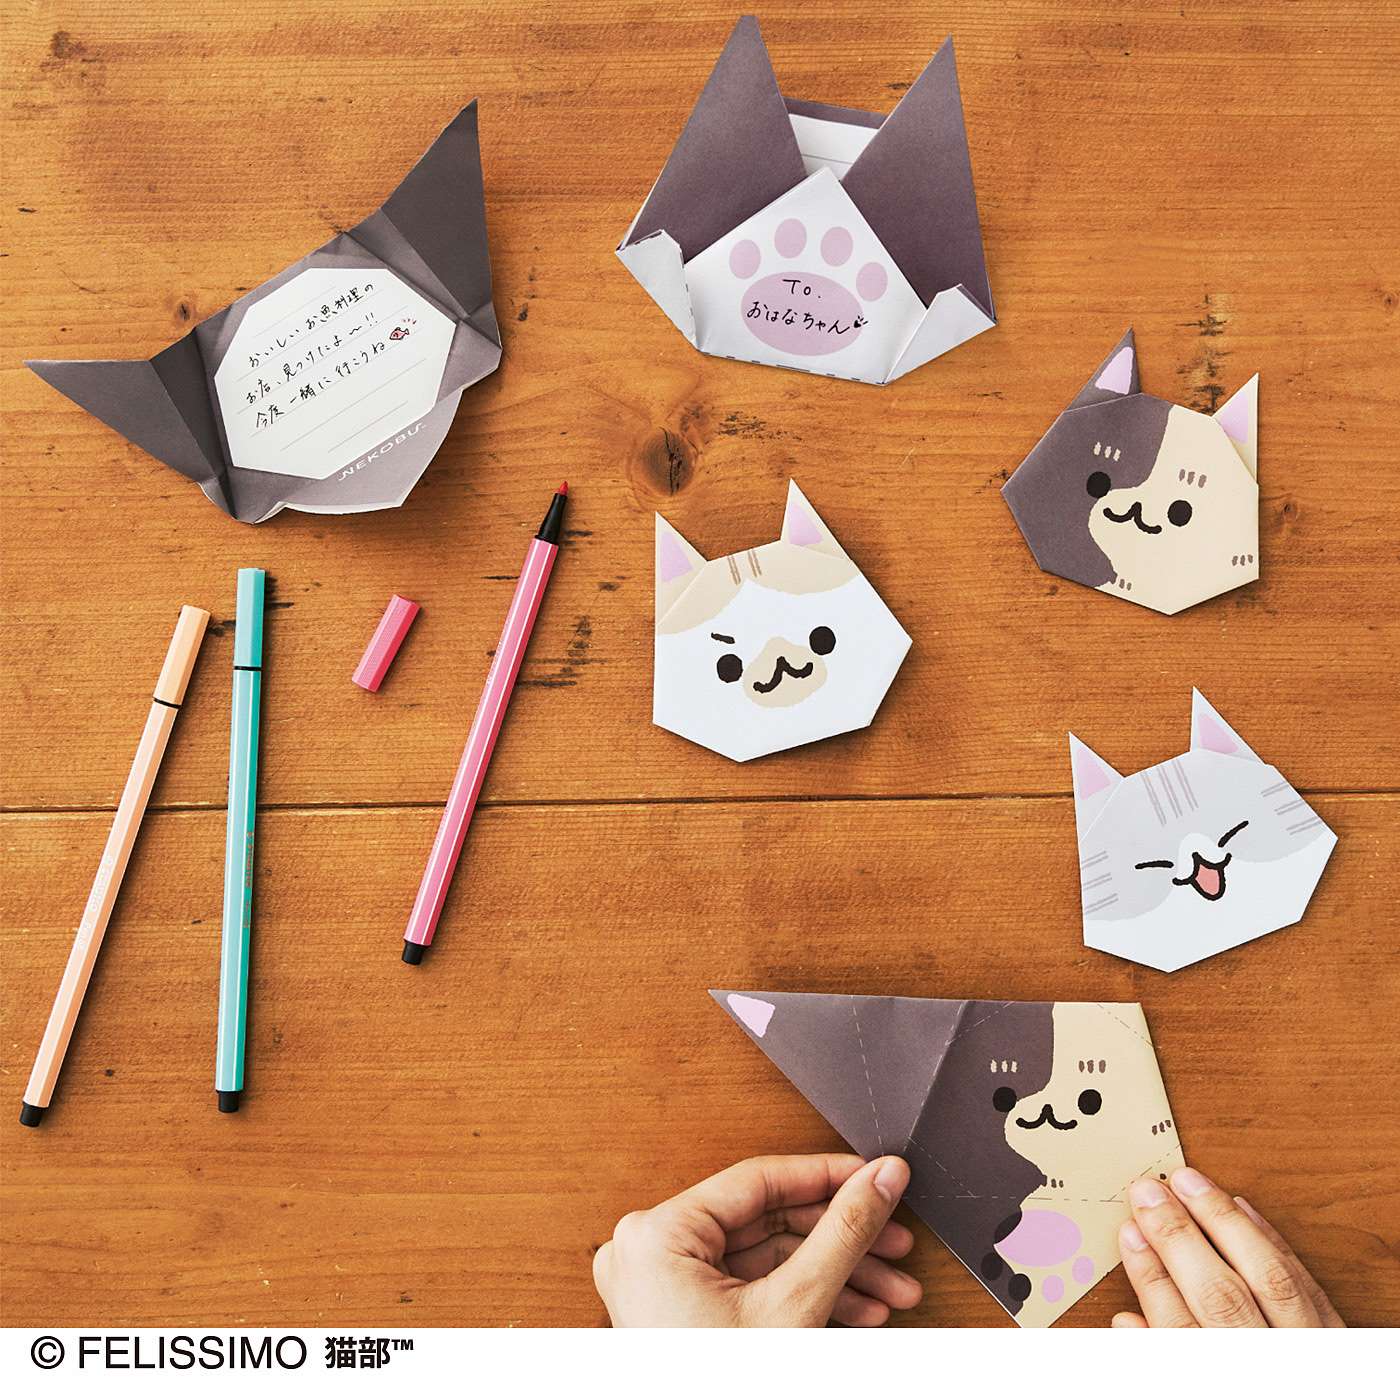 995さんとコラボ 折るだけでかわいい猫さんの顔ができる にゃんにゃん折り紙カード が フェリシモ猫 部 から新登場 株式会社フェリシモのプレスリリース